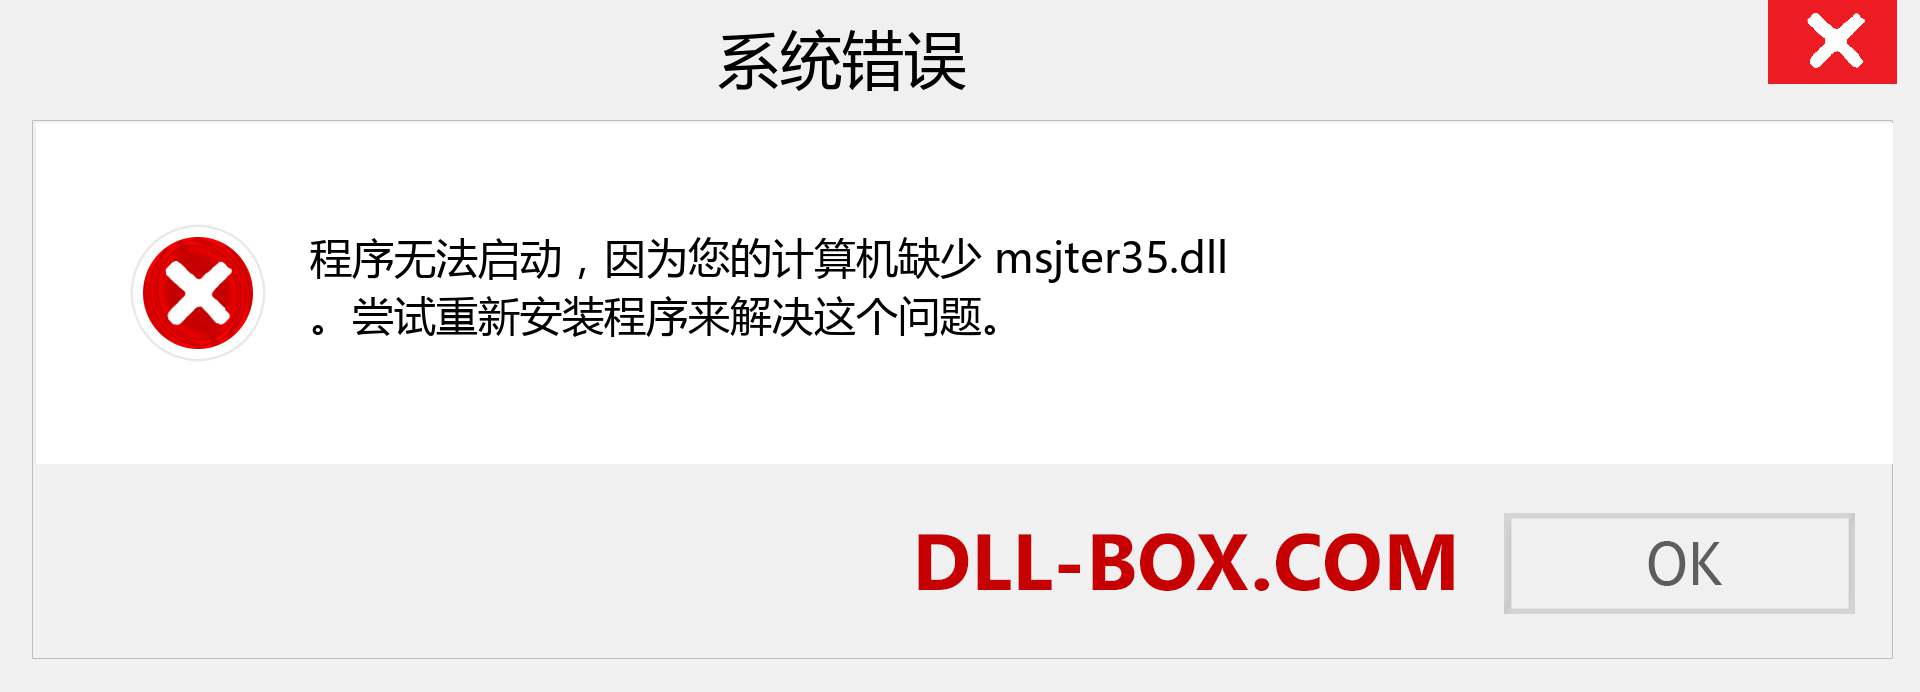 msjter35.dll 文件丢失？。 适用于 Windows 7、8、10 的下载 - 修复 Windows、照片、图像上的 msjter35 dll 丢失错误